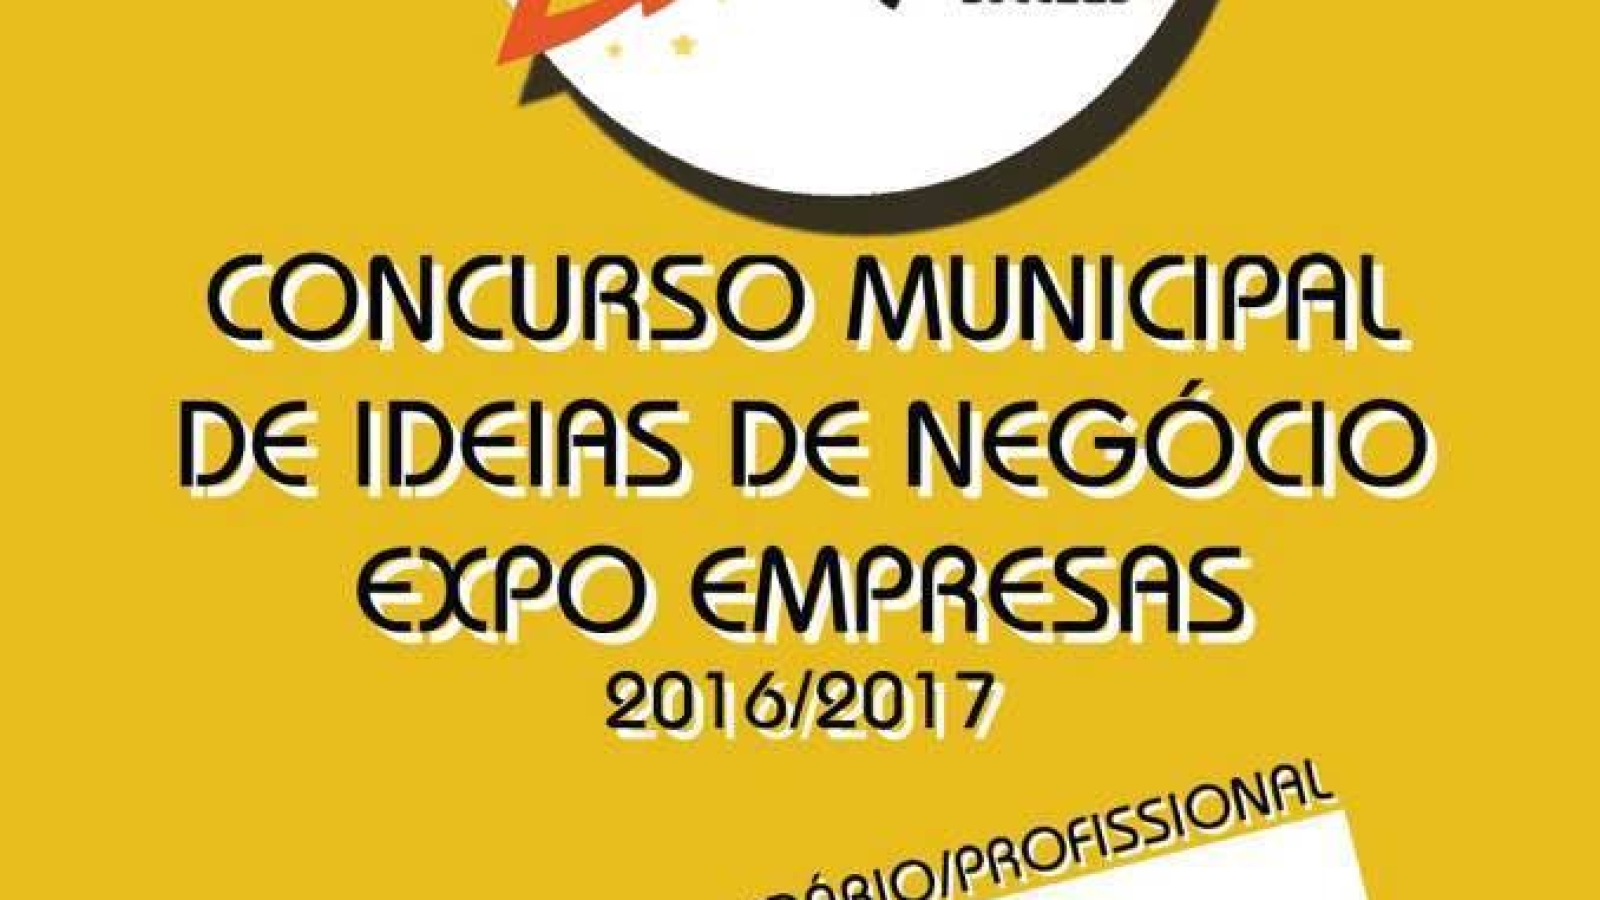 Concurso Municipal de Ideias de Negócio Expo Empresas 2016/2017